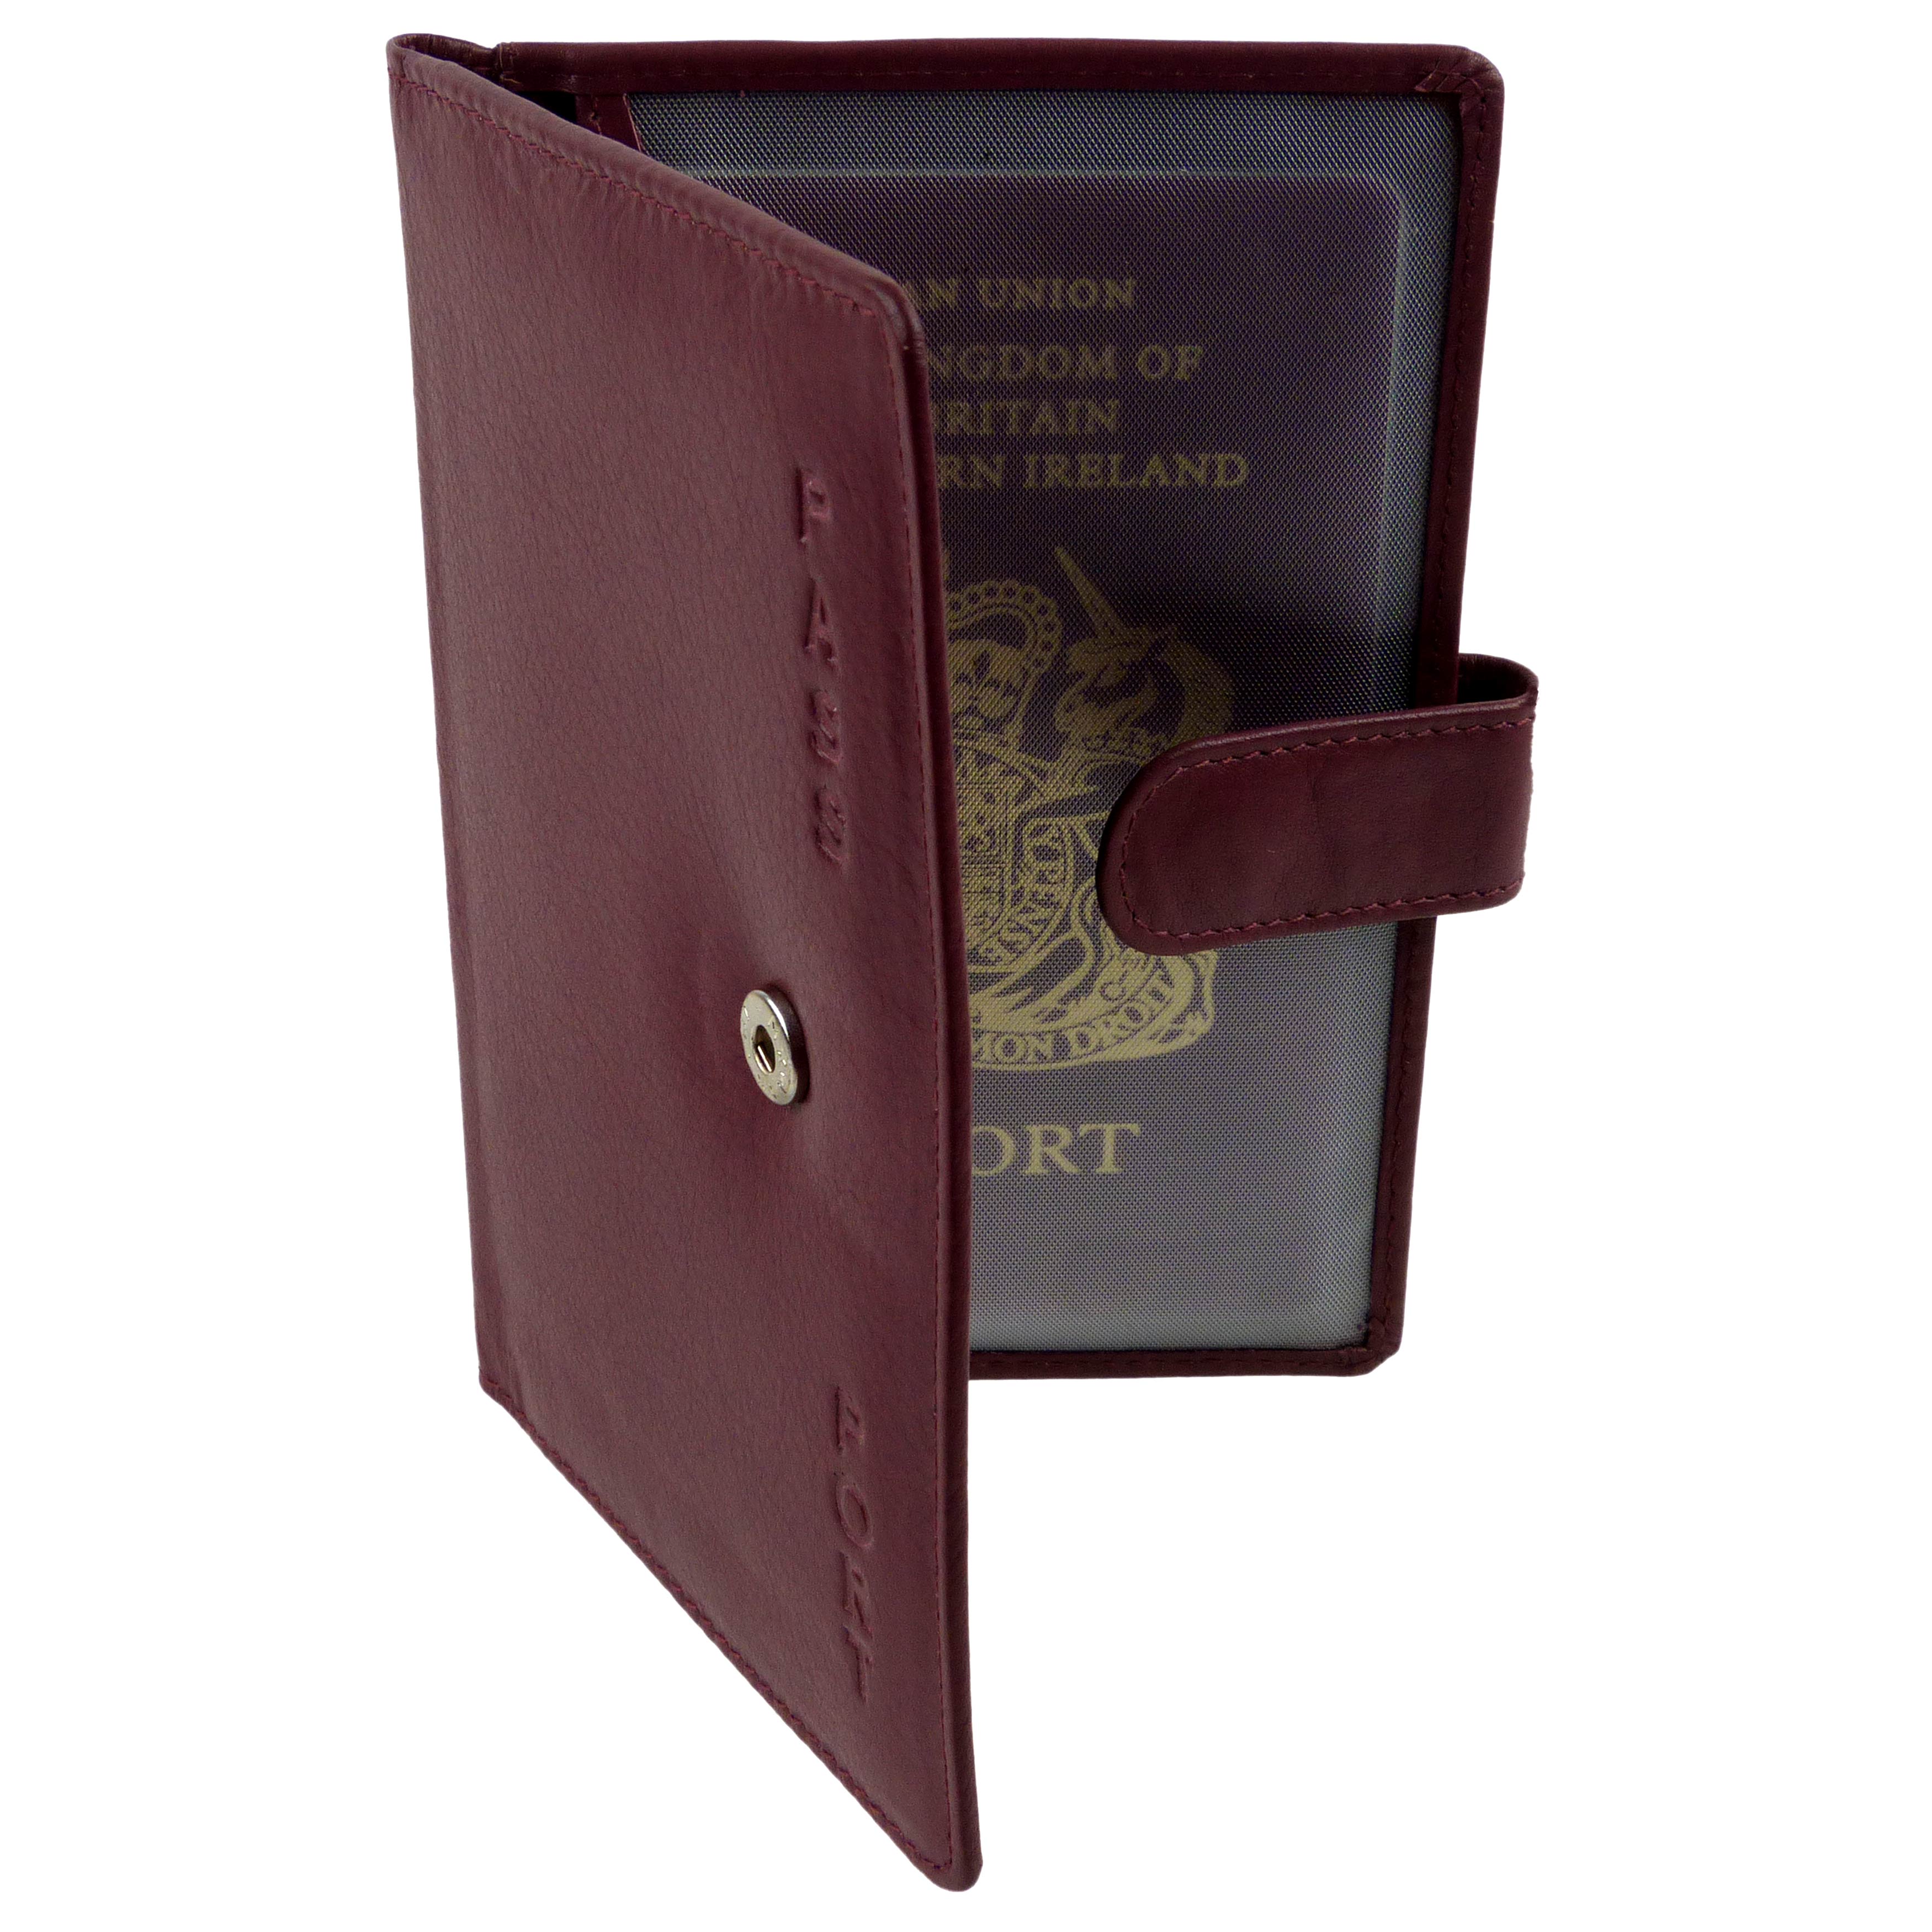 Golunski & Prime Hide qualità in Pelle Portafoglio Da Viaggio Documenti Custodia per passaporto. 